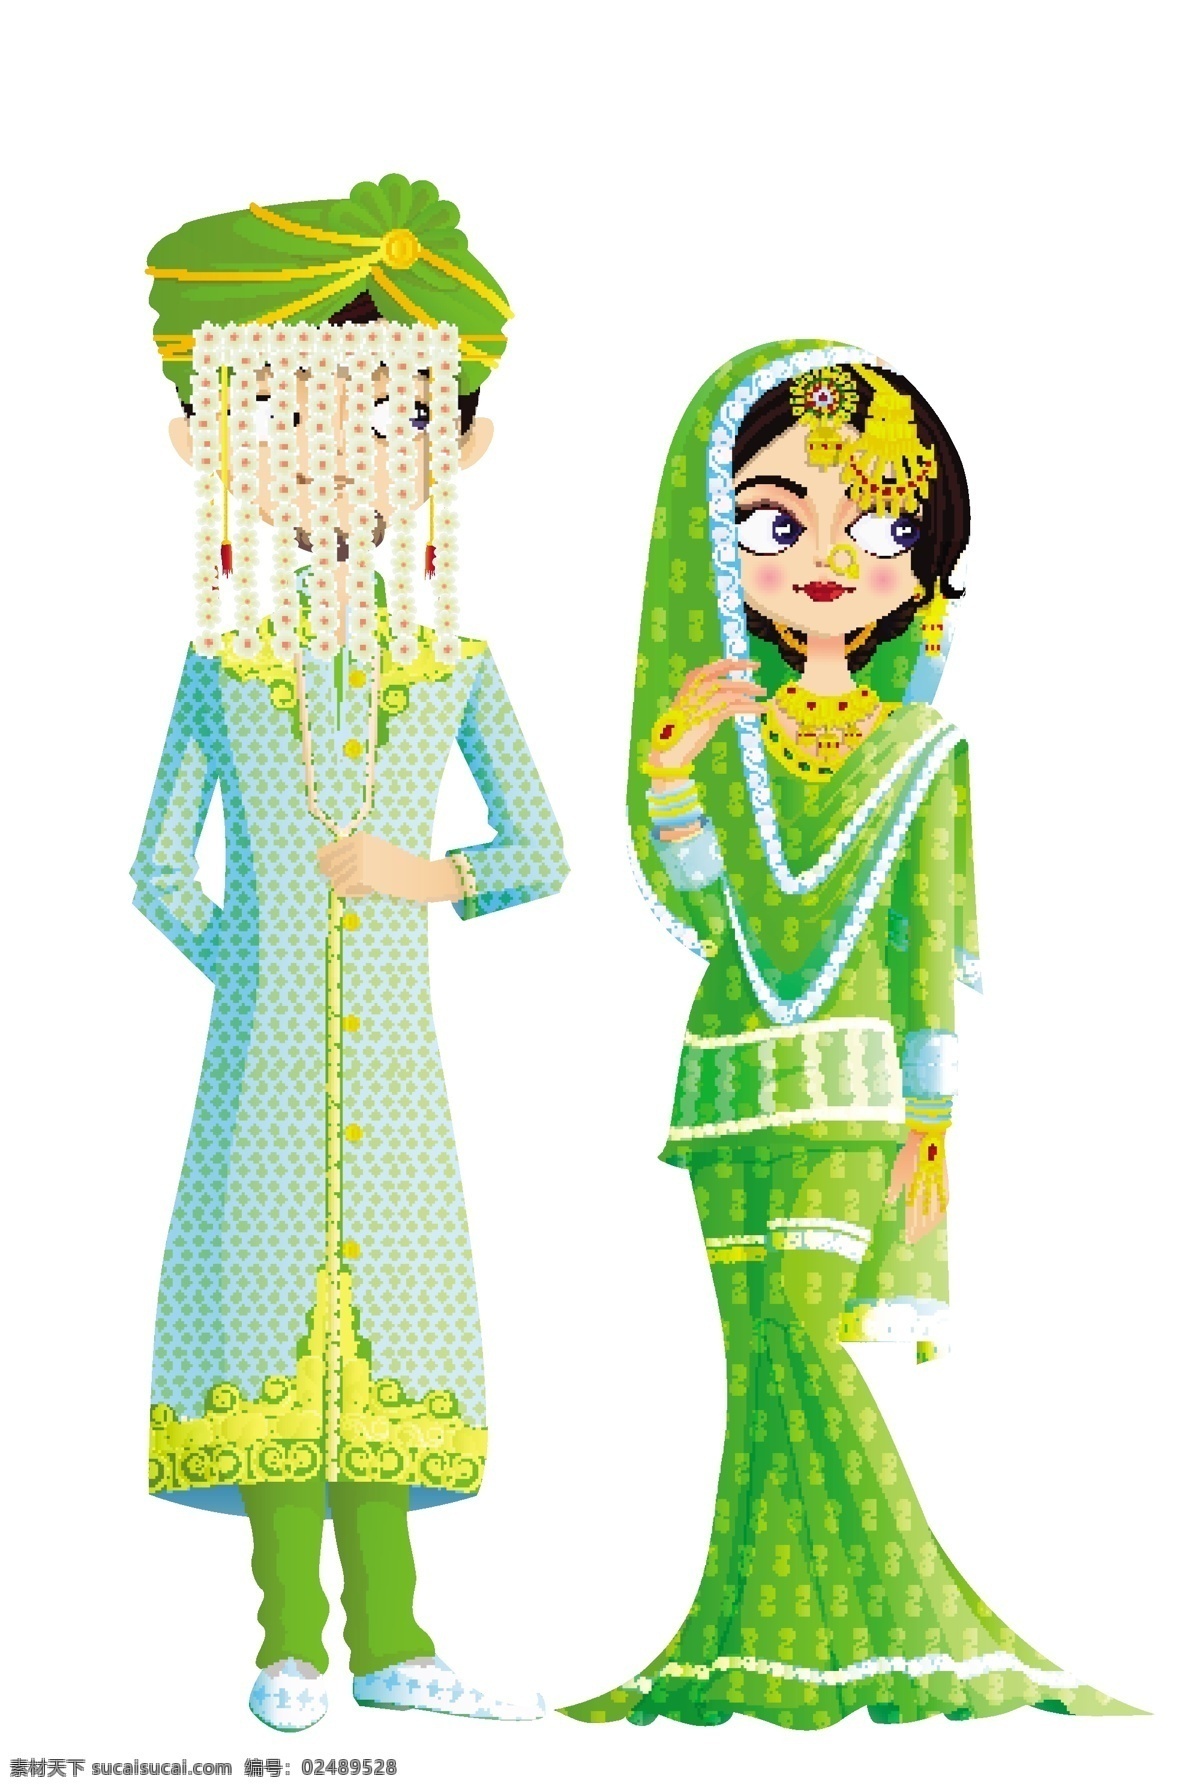 传统 印度 婚礼 服饰 婚庆 婚礼服饰 传统服饰 亚洲传统服饰 新人图片 矢量素材 白色